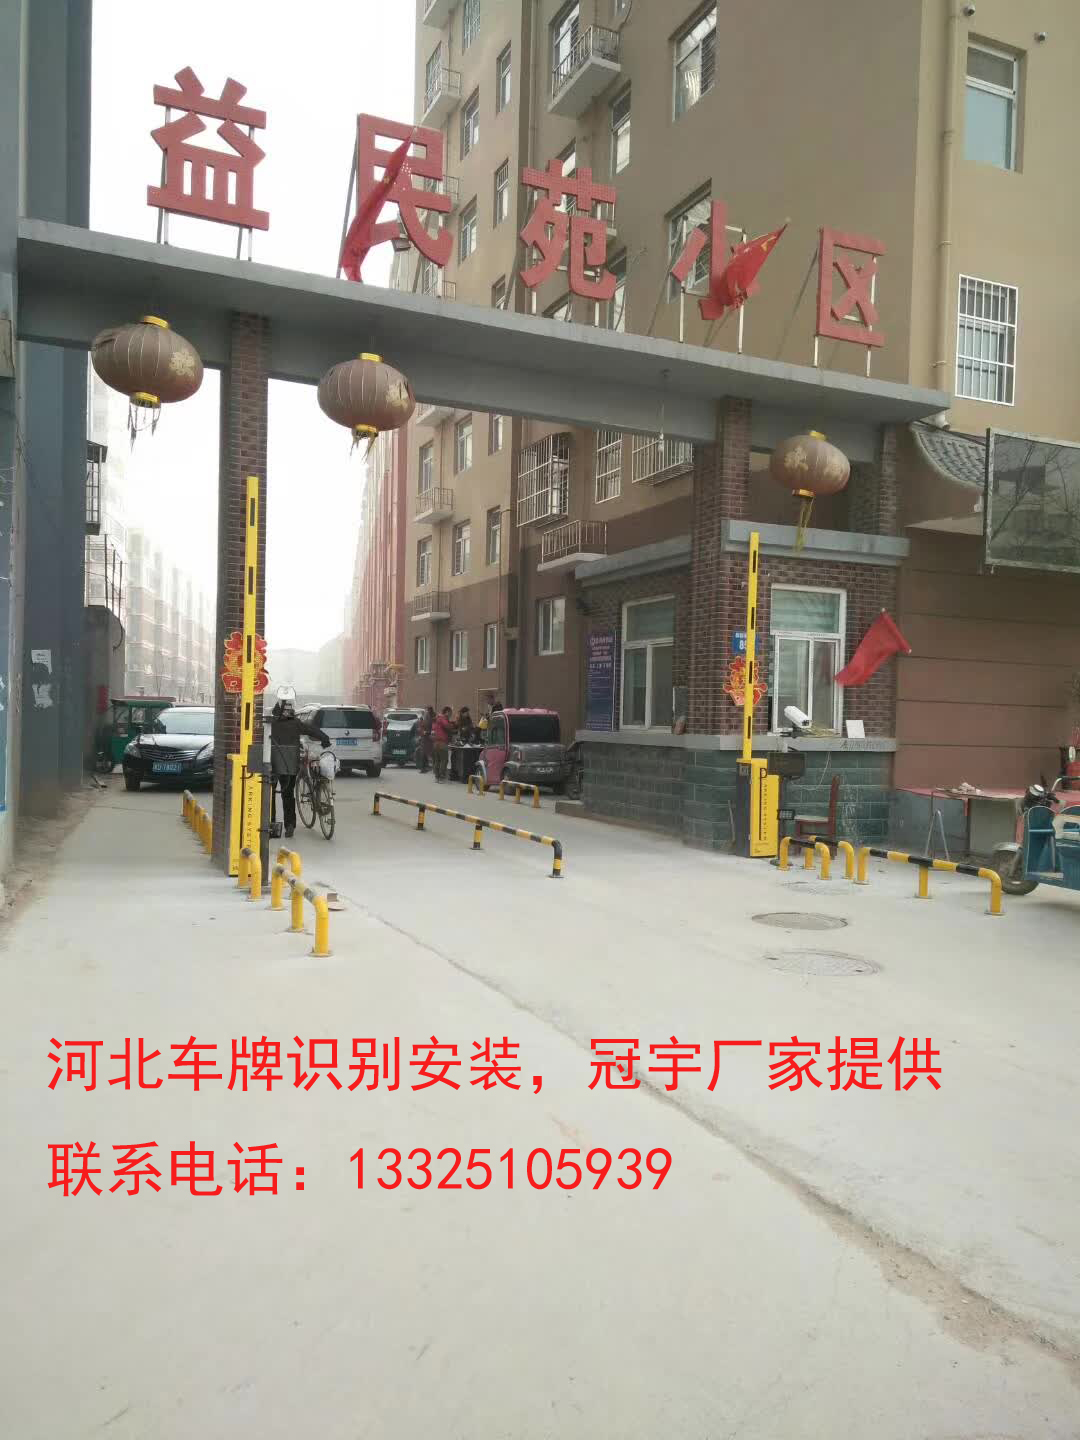 潍坊邯郸哪有卖道闸车牌识别？